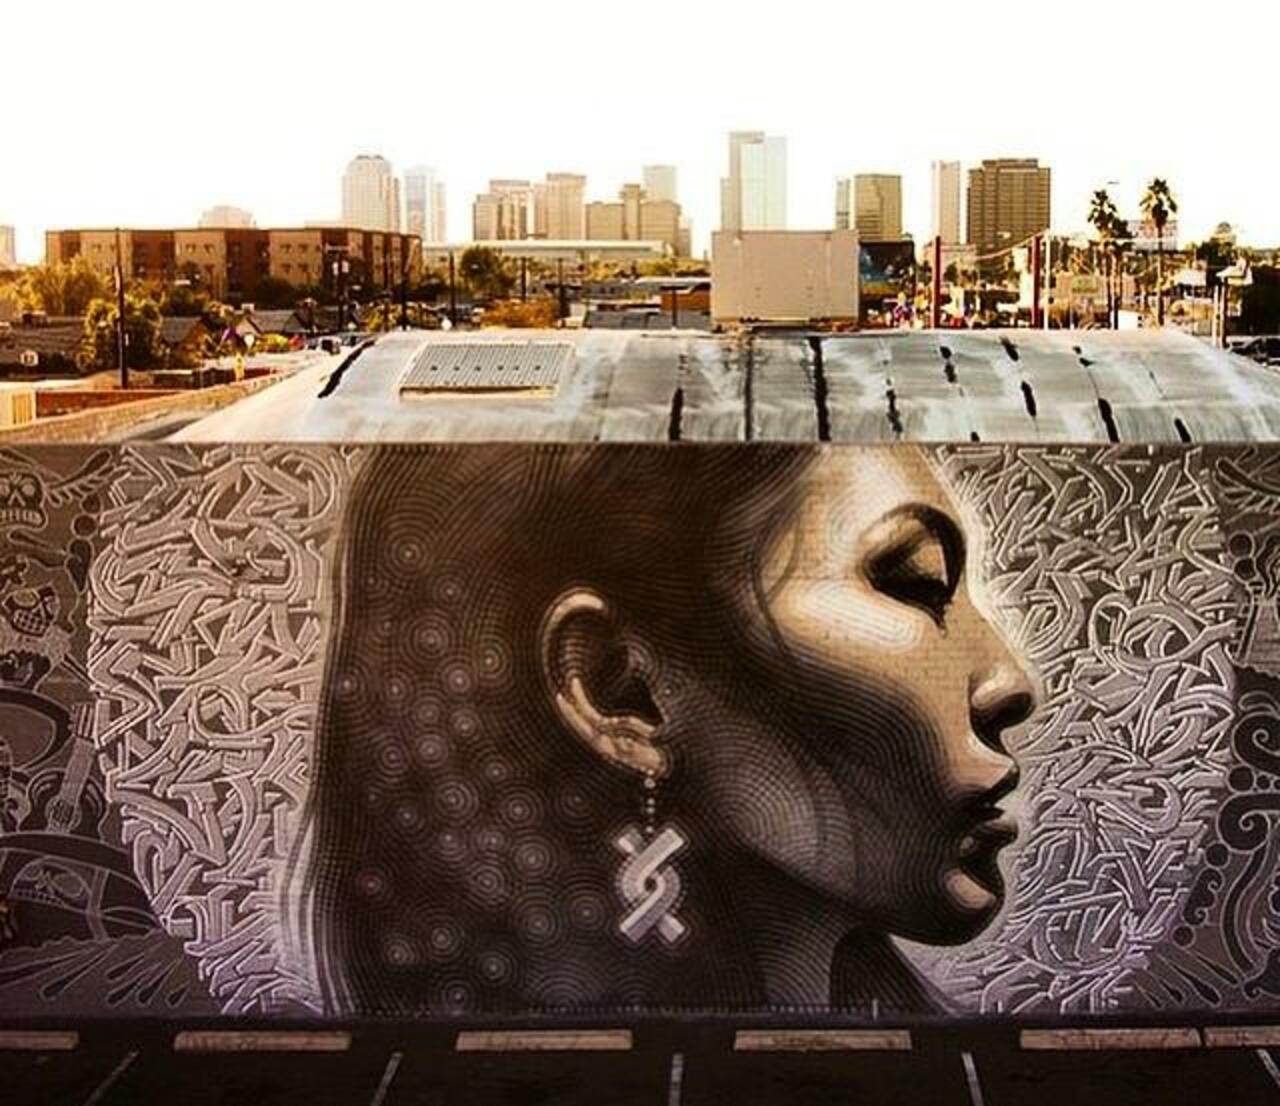 "@GoogleStreetArt: Latest Street Art work by El Mac in Phoenix, Arizona
#art #mural #graffiti #streetart http://t.co/h5vRM9SqMe"